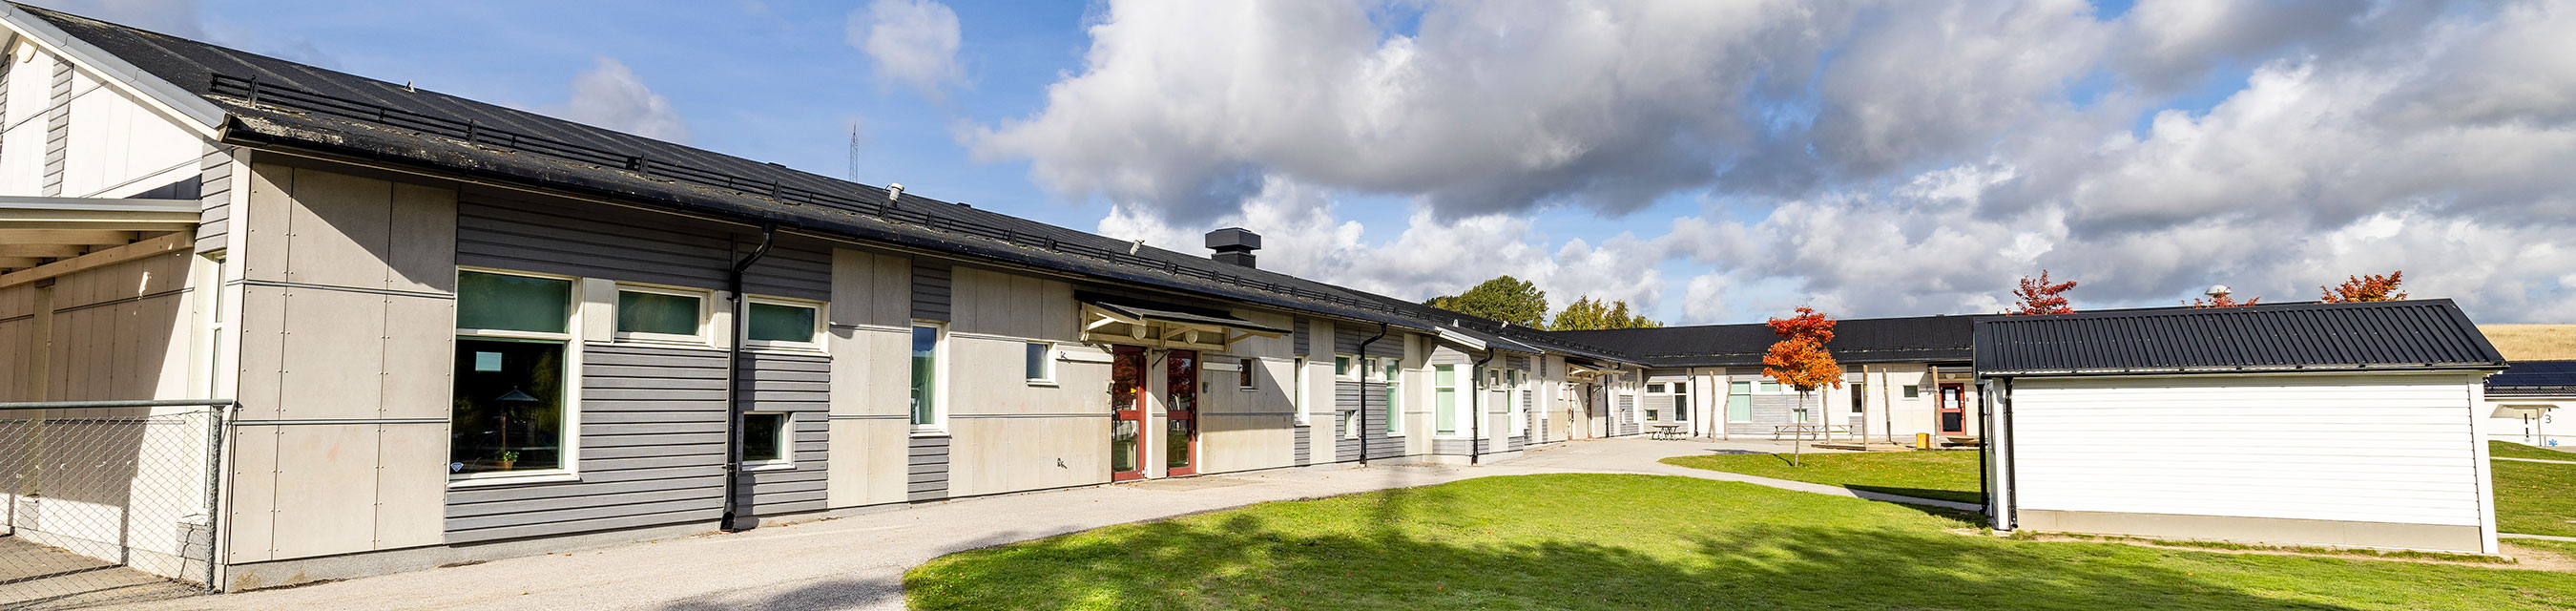 Solglimtens förskola är byggd i ett plan och har fem avdelningar.